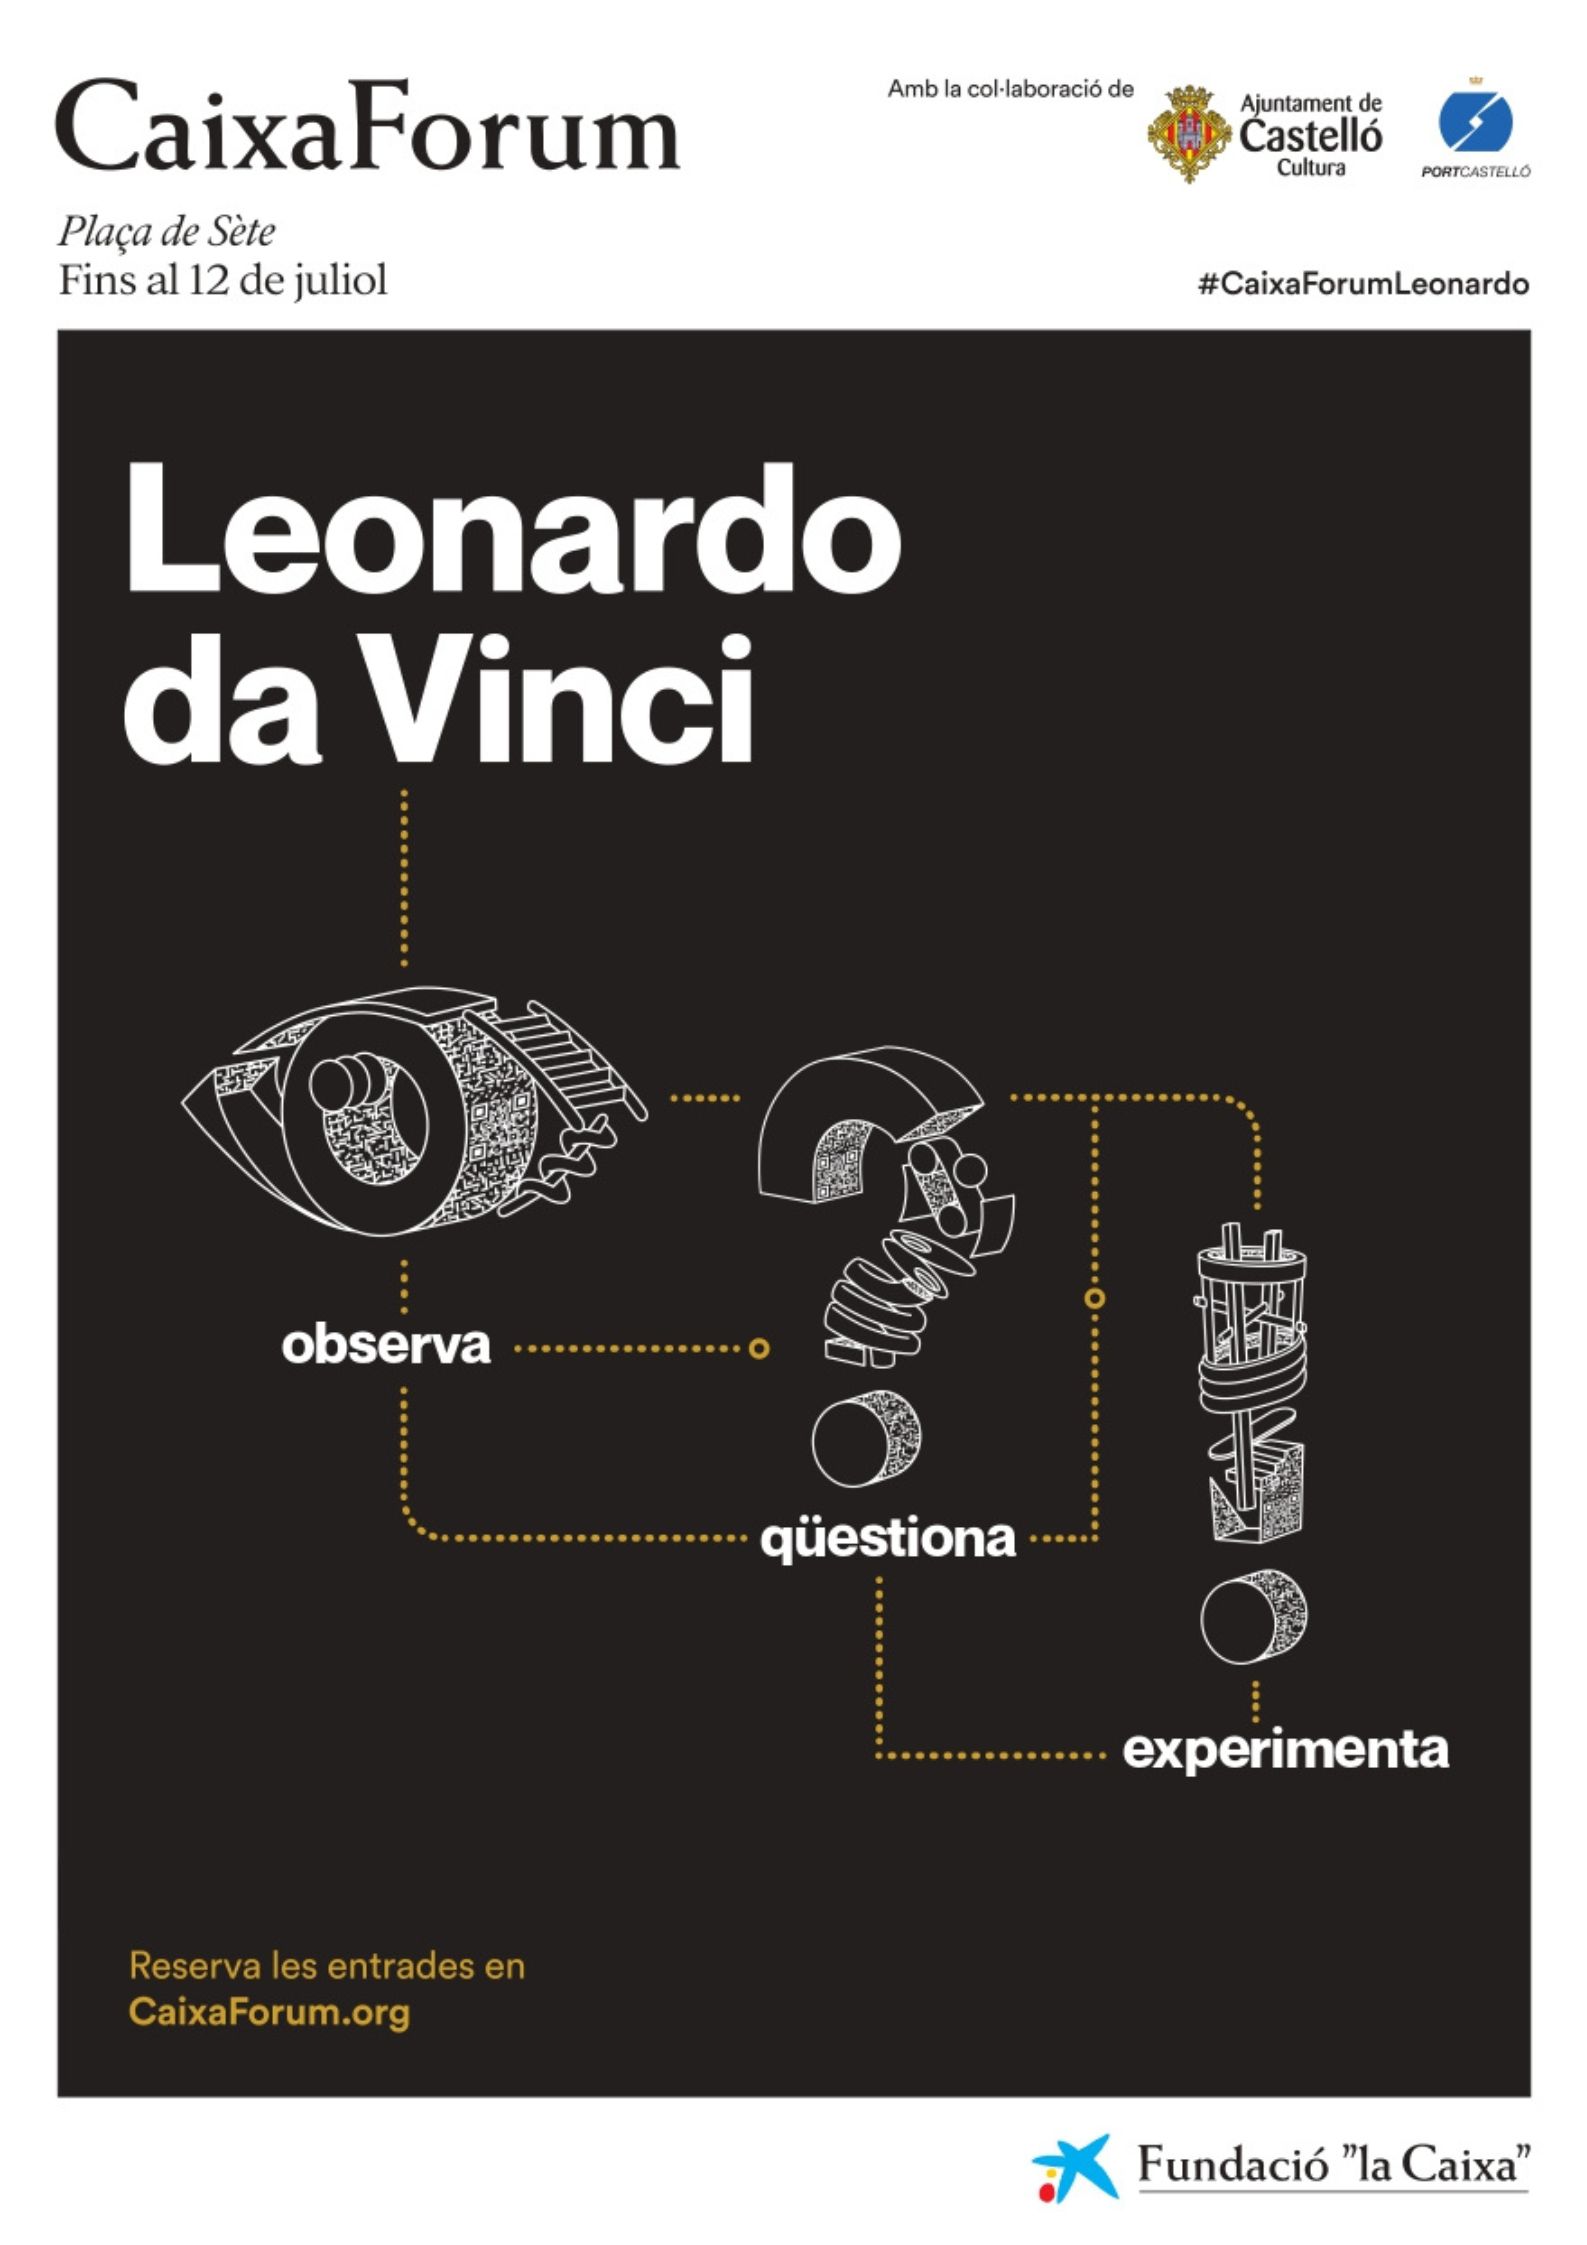 Imagen representativa de Exposición “Leonardo da Vinci. Observa. Qüestiona. Experimenta